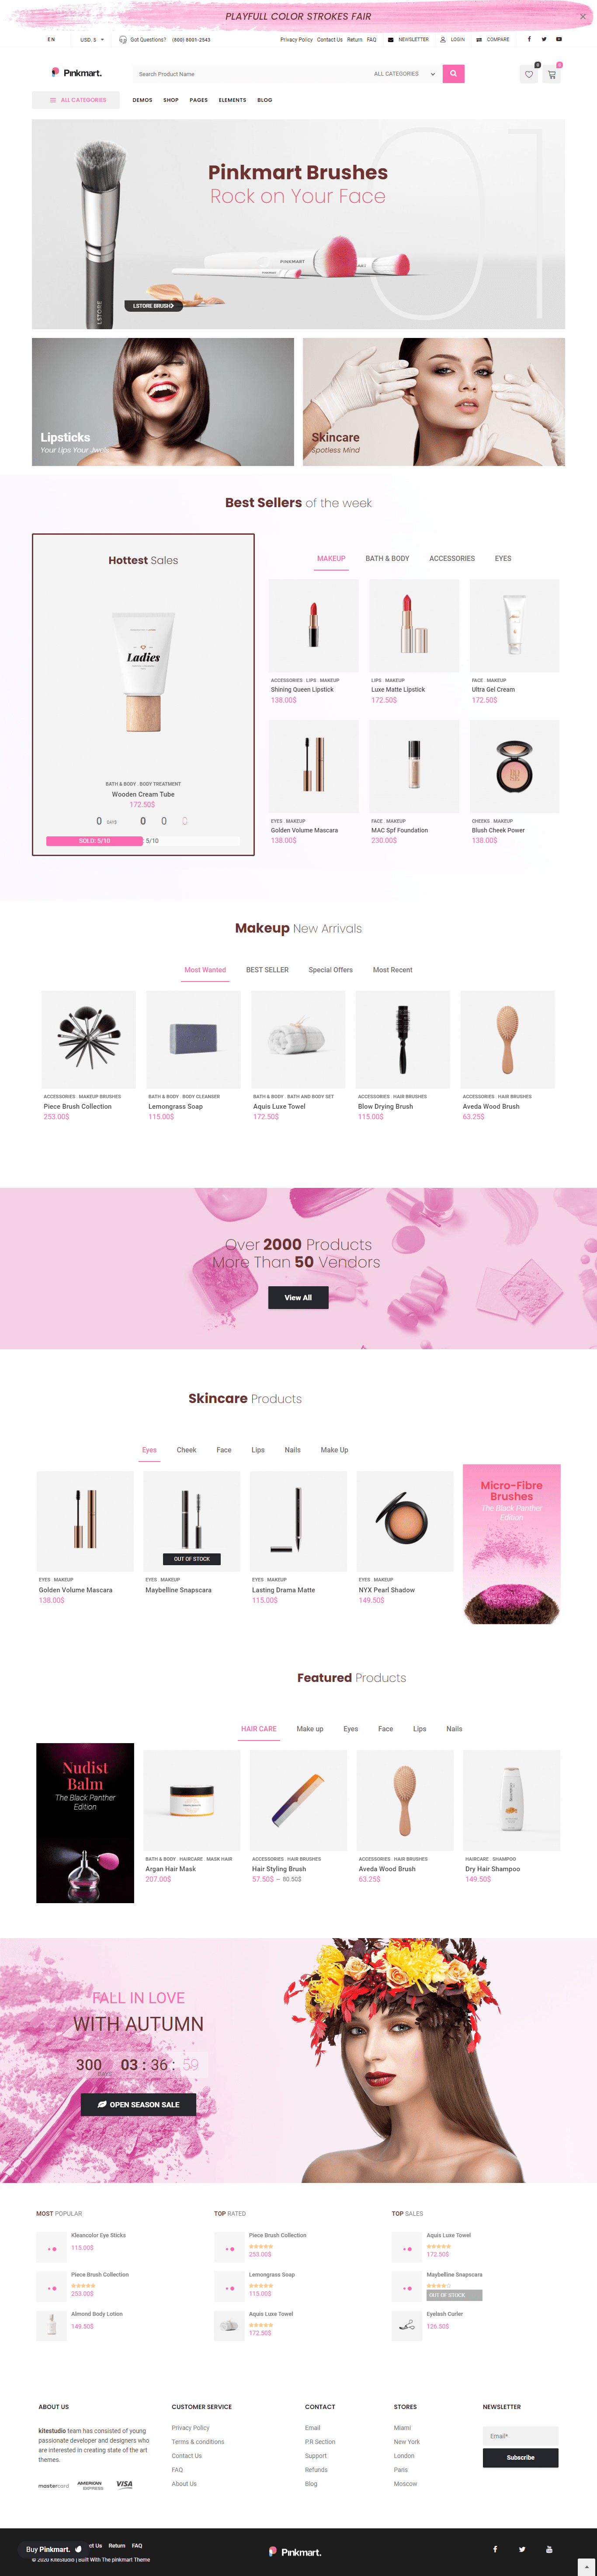 pinkmart cosmetics